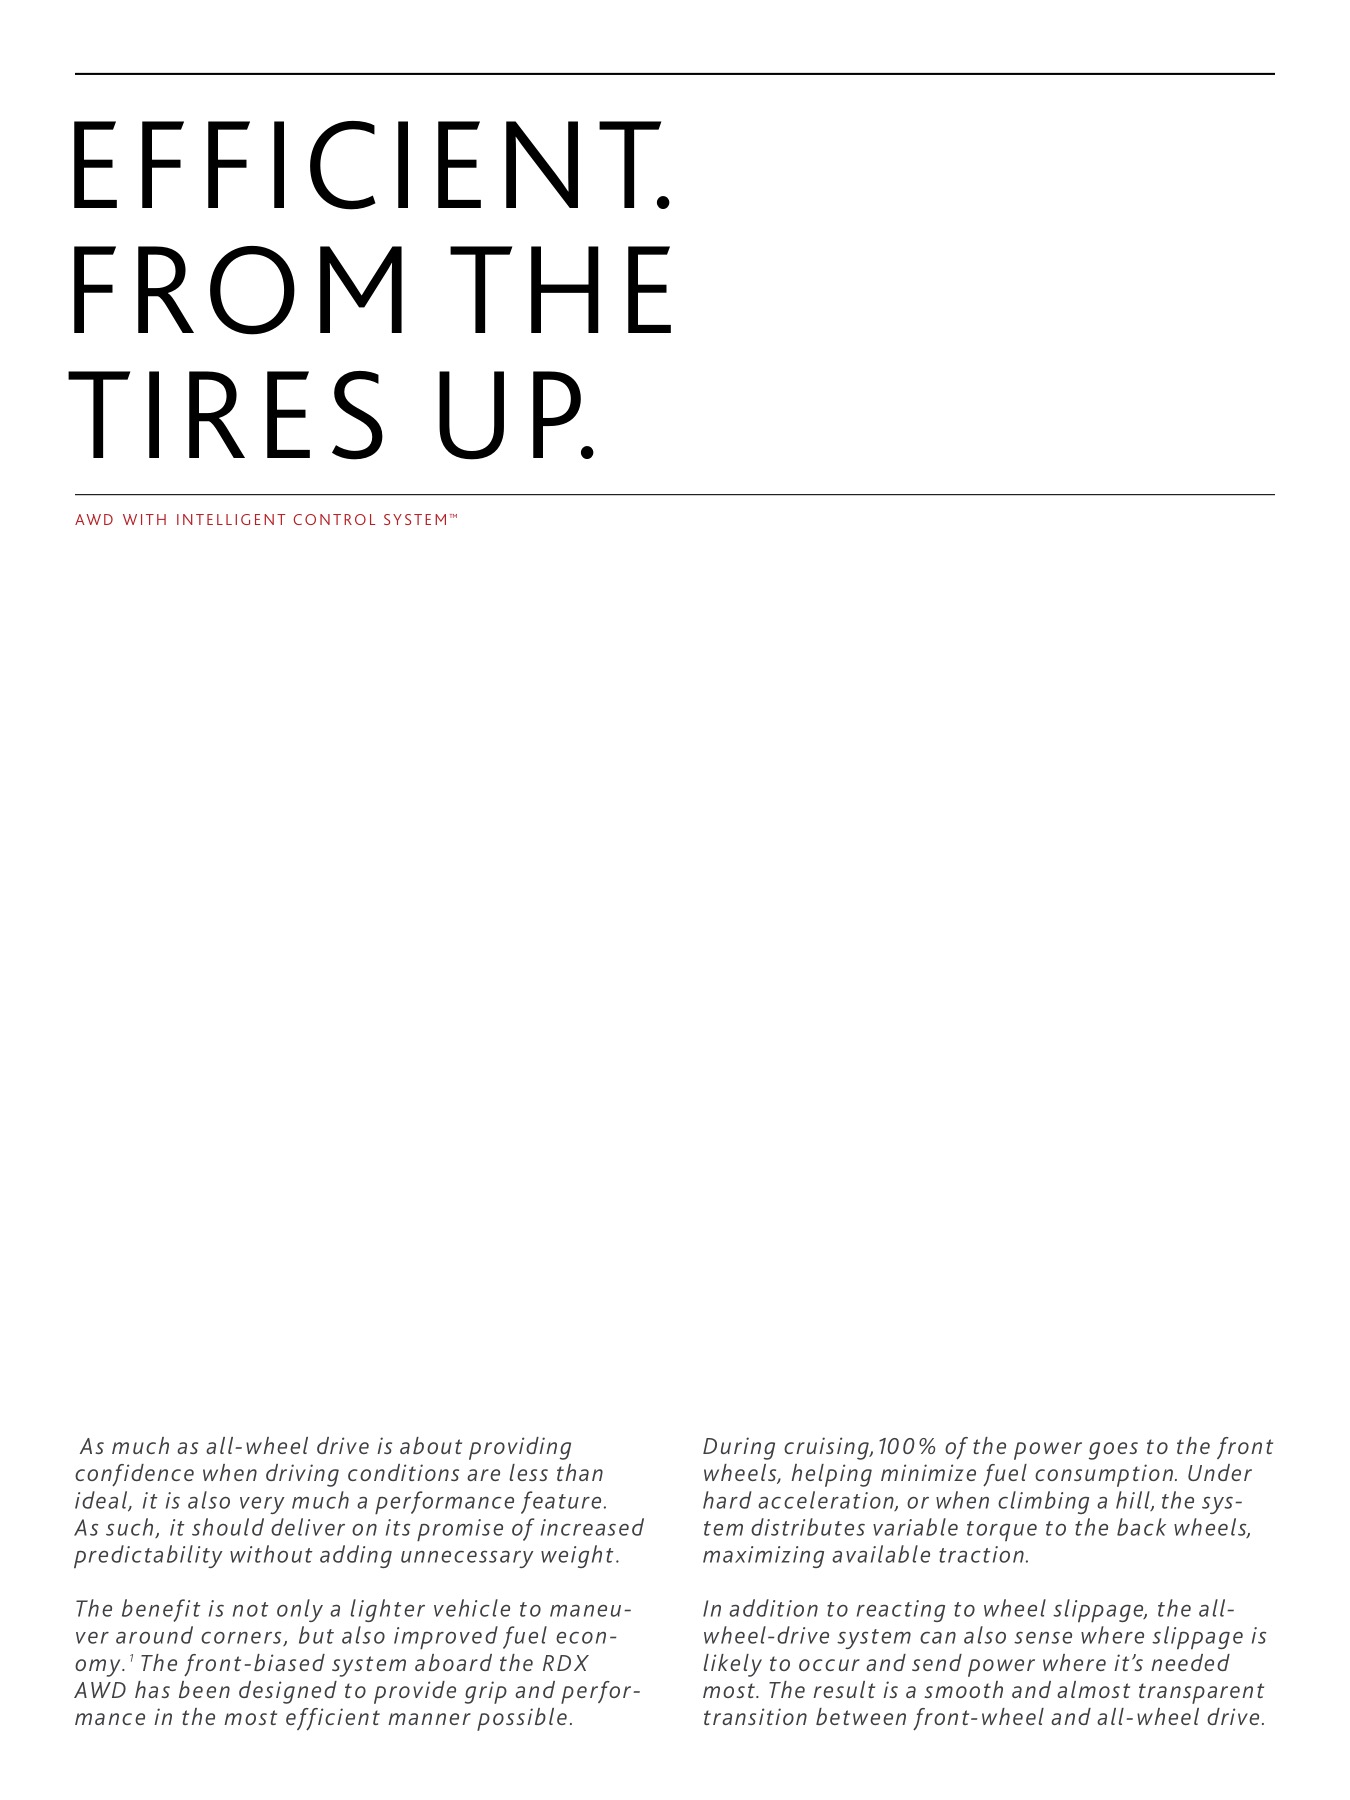 2014 Acura RDX Brochure Page 26